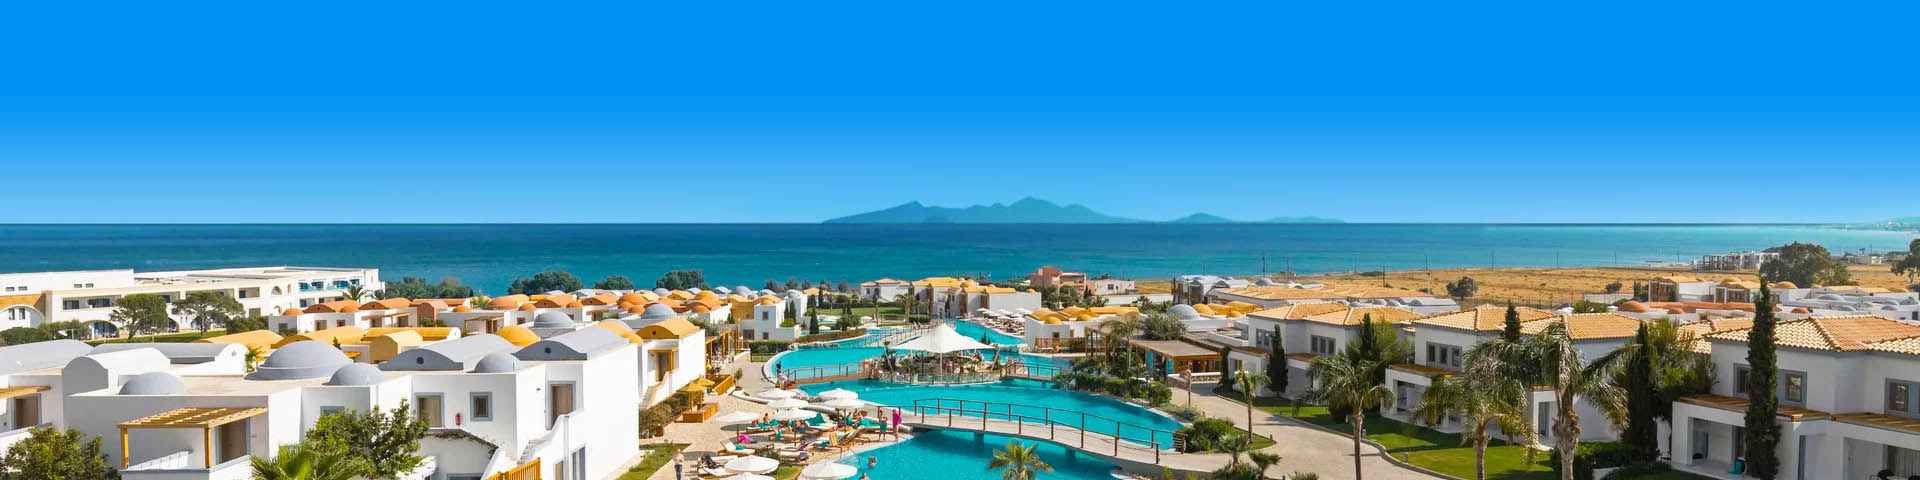 Mitsis hotel met zwembad en uitzicht op zee